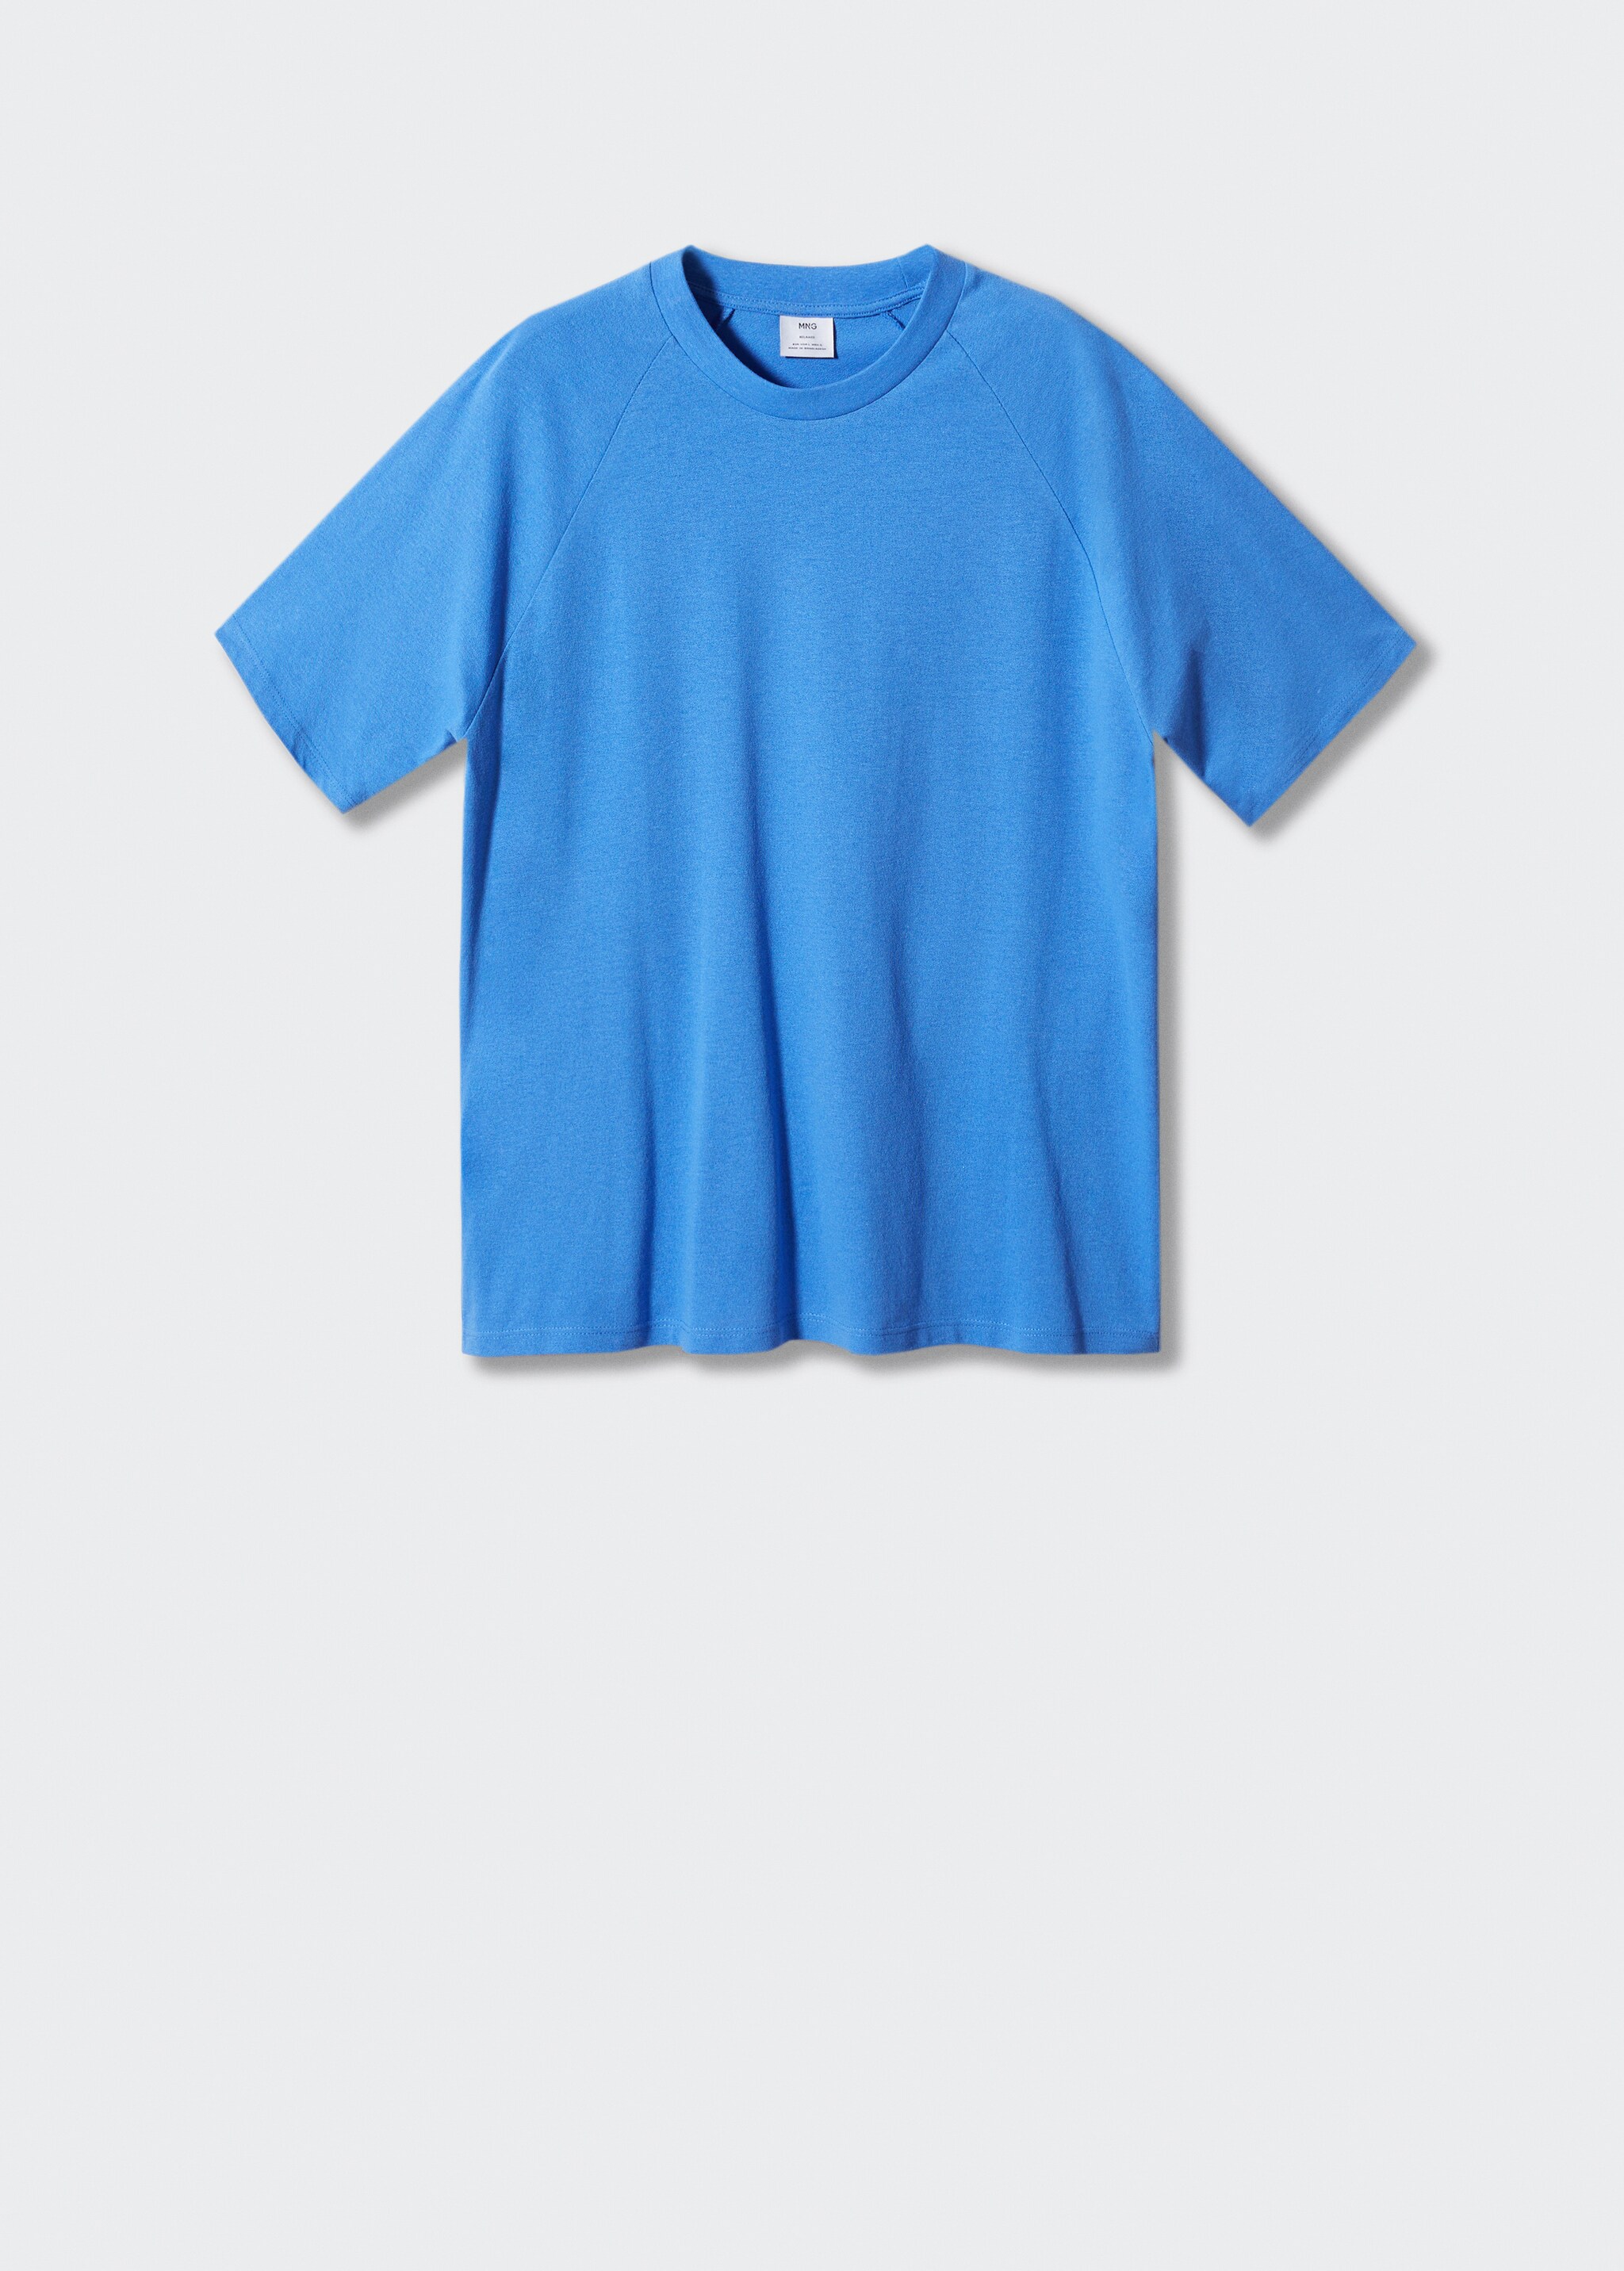 Camiseta algodón textura - Artículo sin modelo